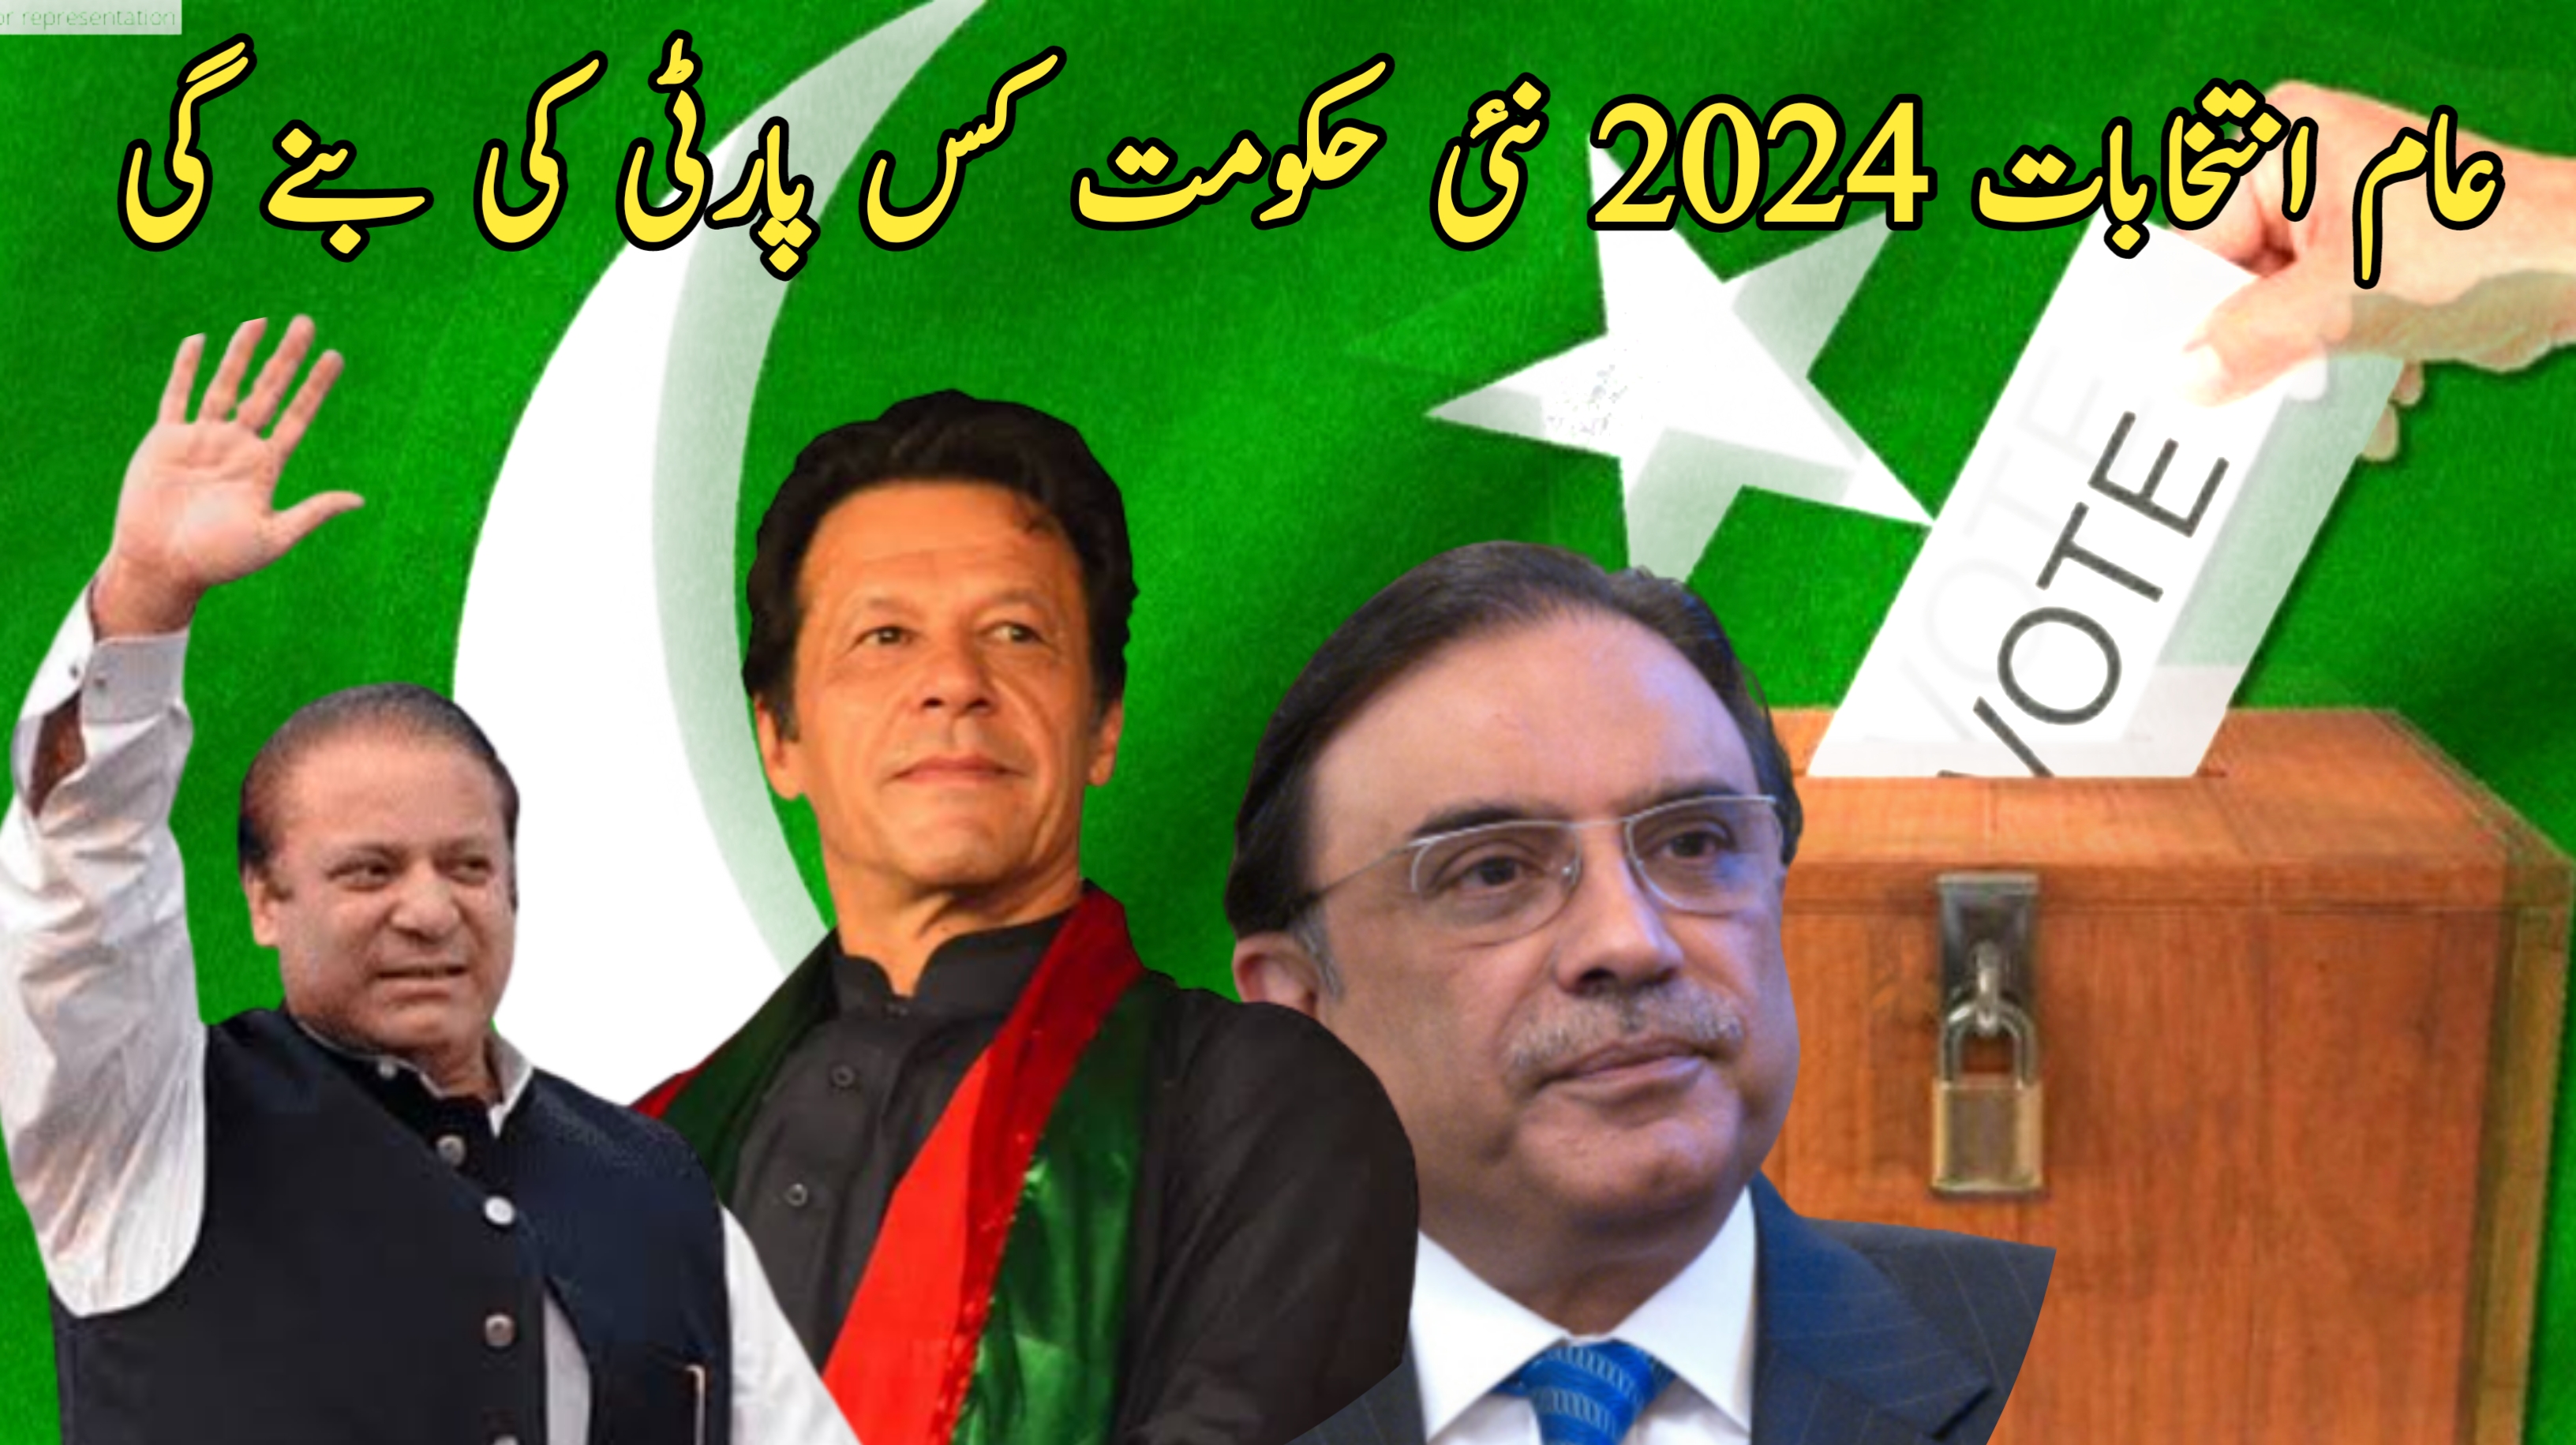 پاکستان انتخابات 2024 حکومت کس پارٹی کی بنے گی